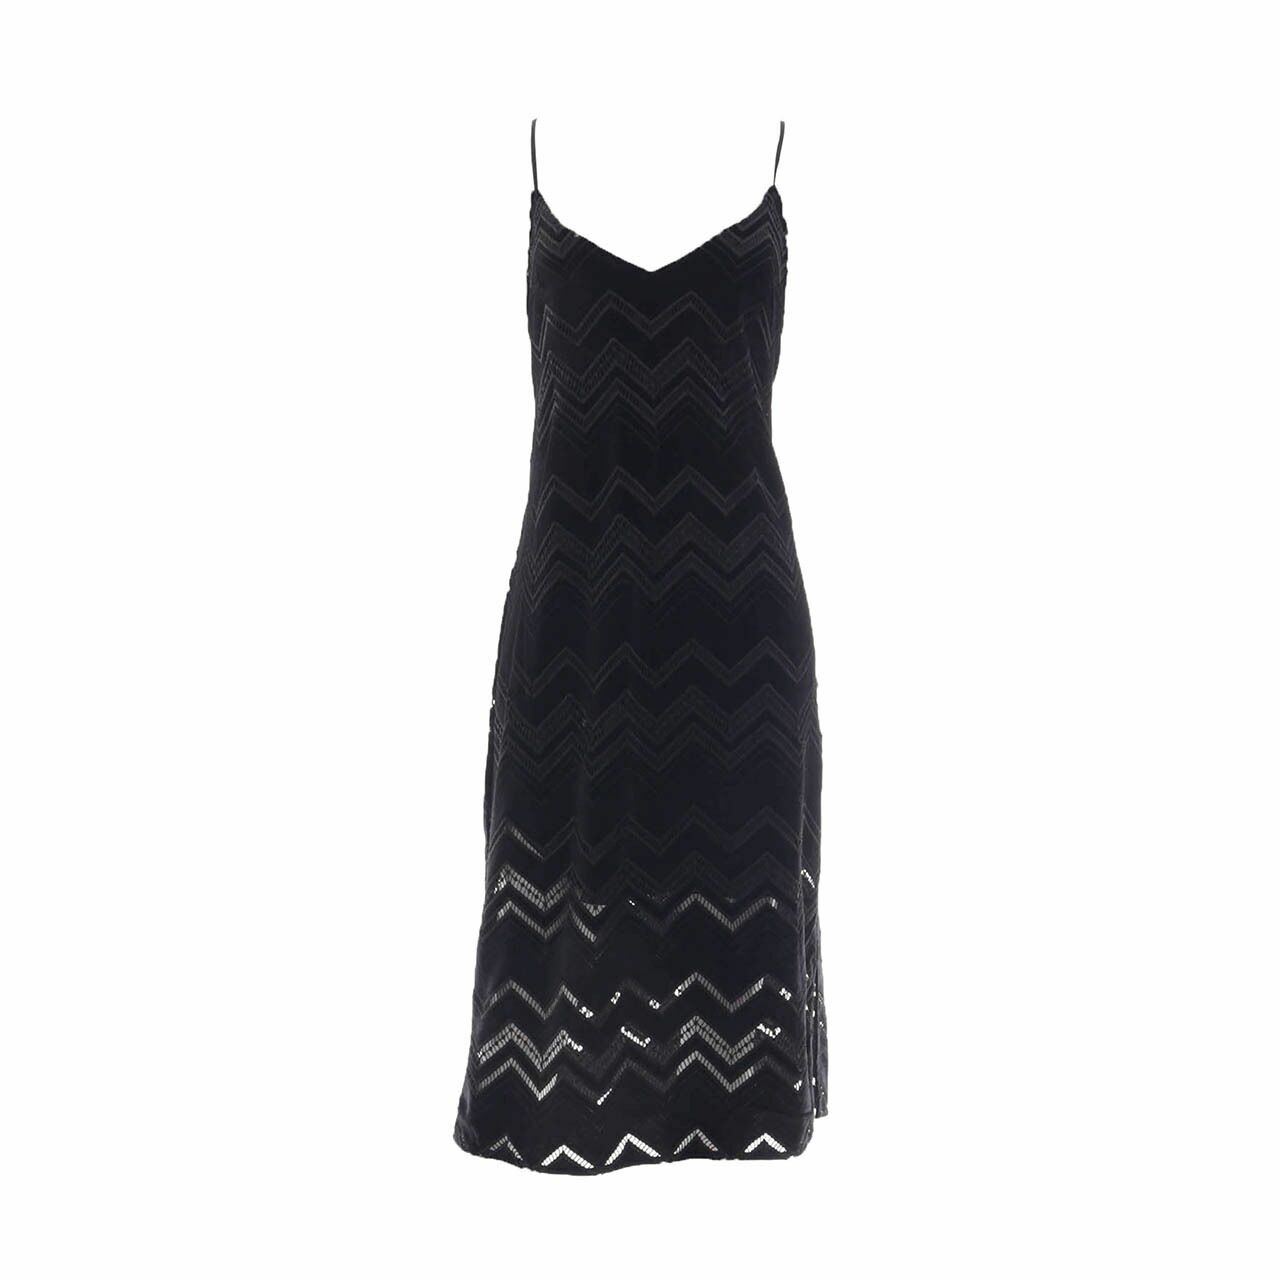 Kookai Black Perforated Midi Dress